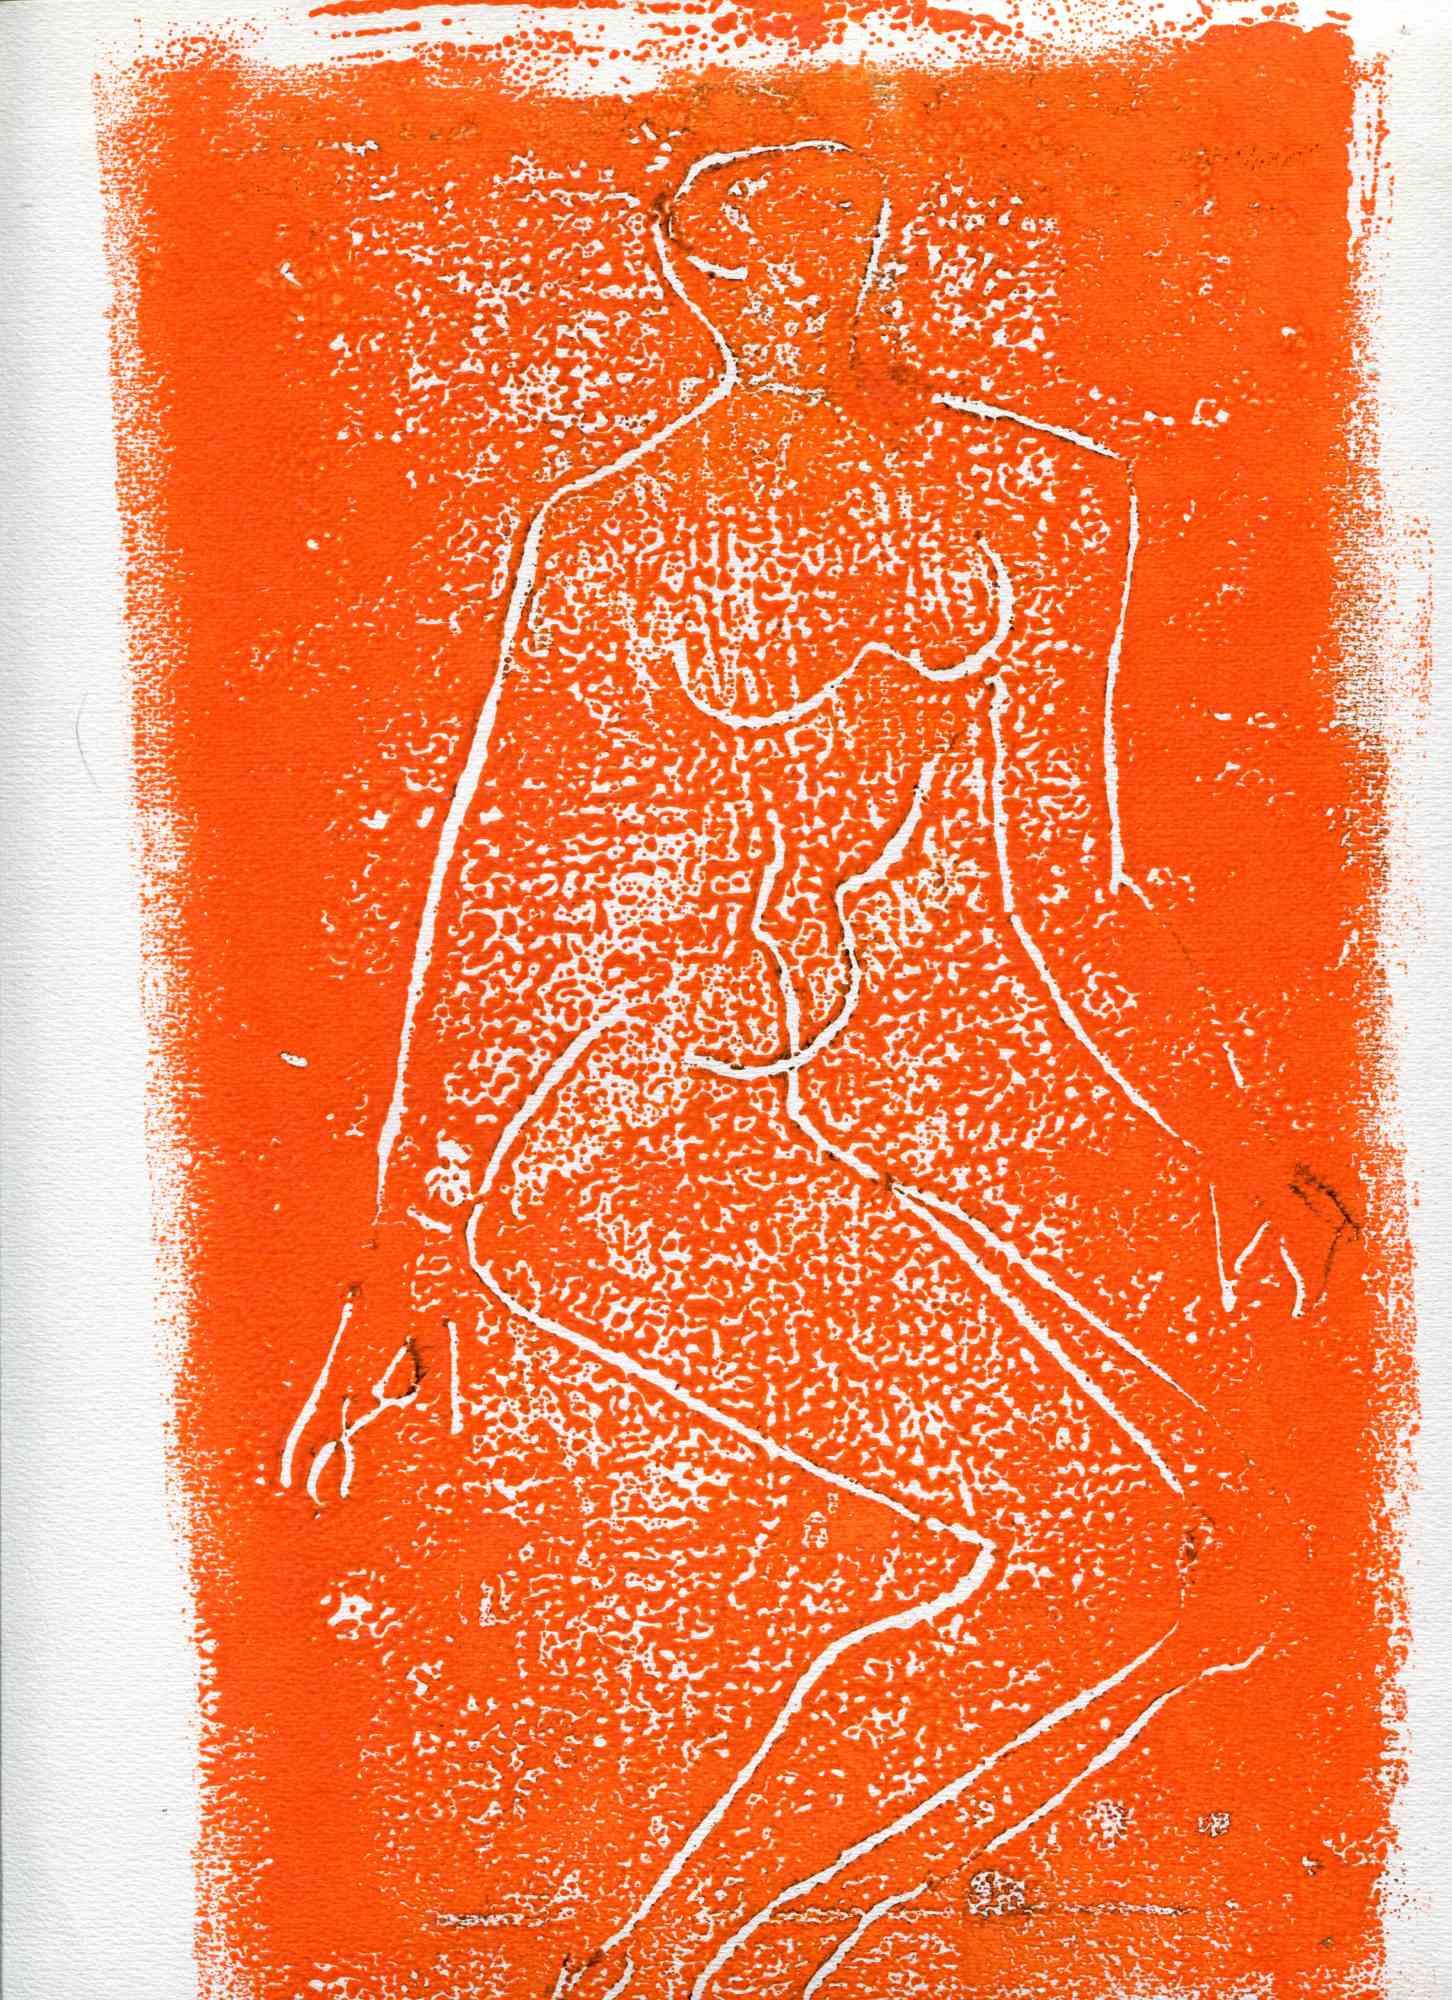 Unknown Figurative Print - Figure - Original Lithograph - Mid-20th Century